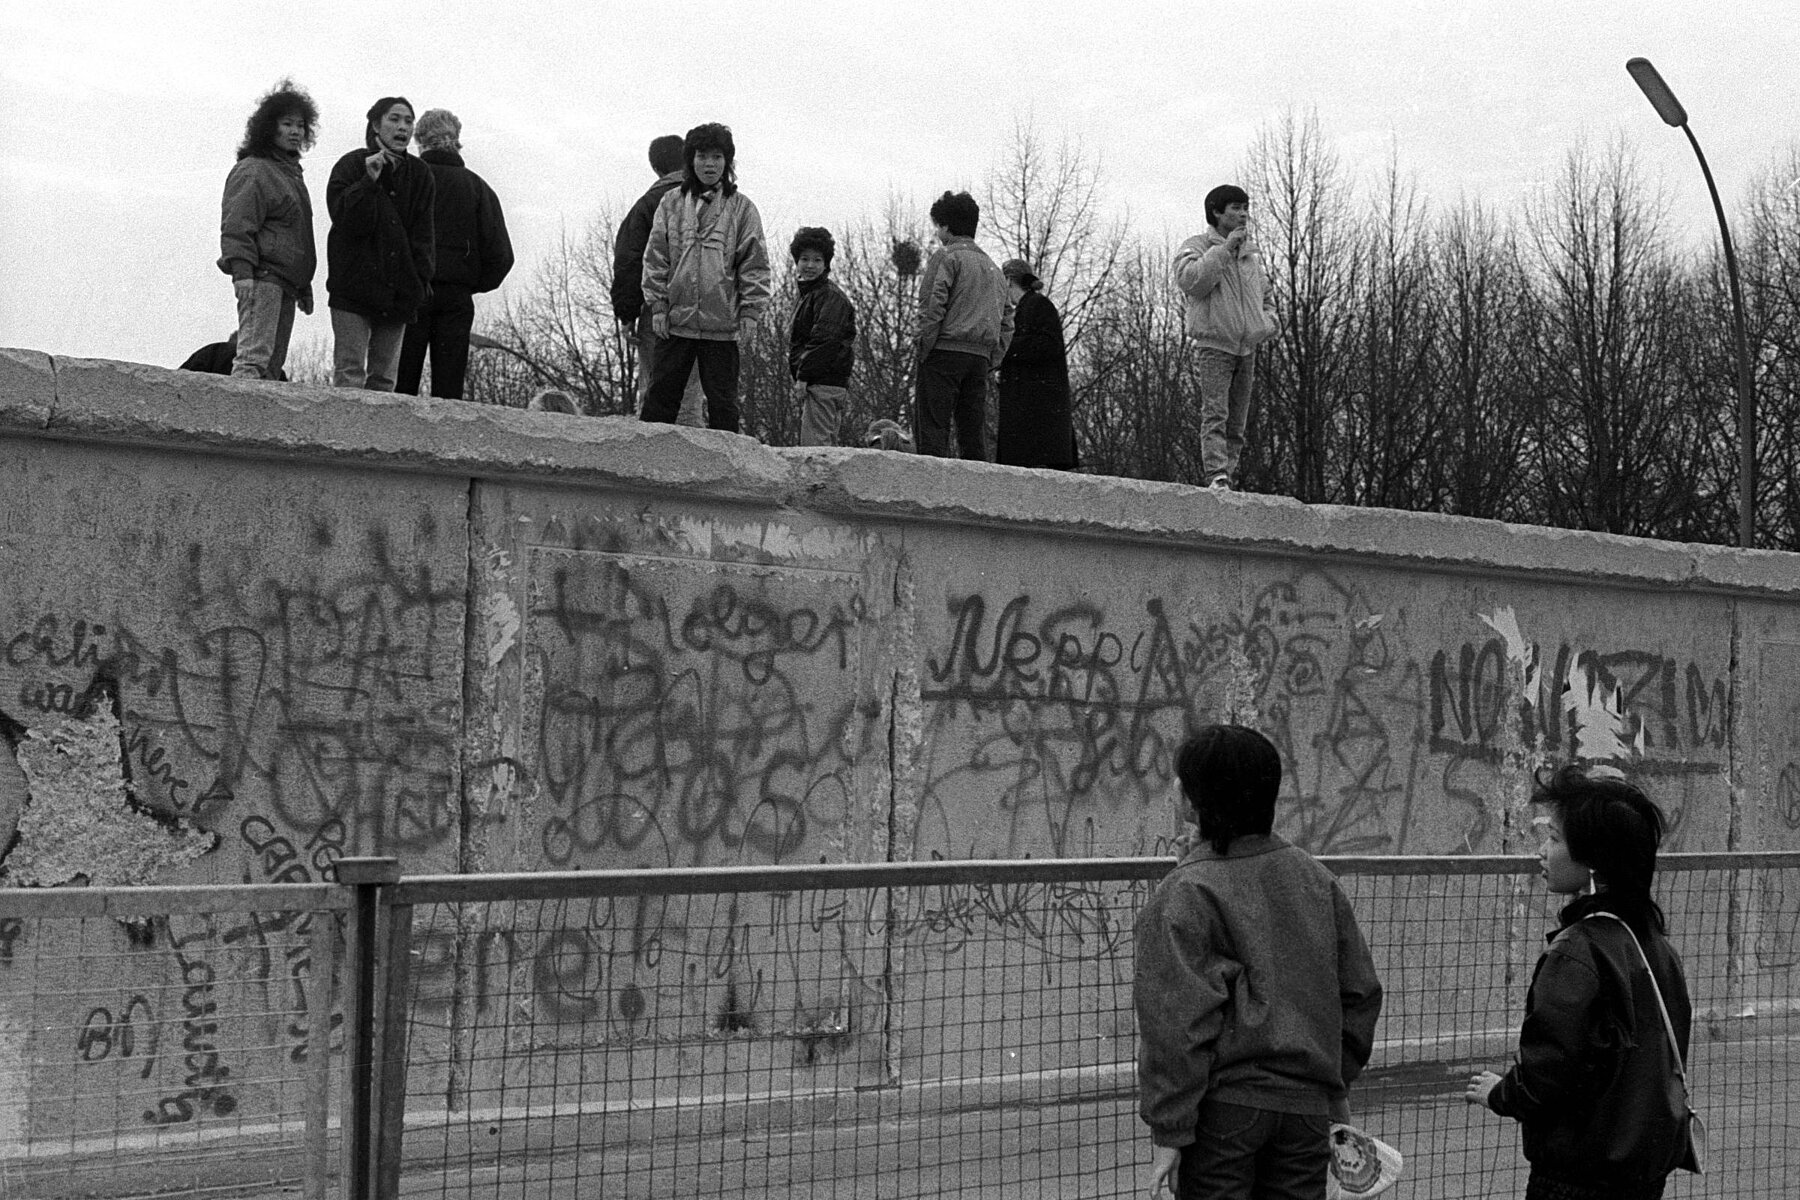 Blick auf die Berliner Mauer mit Graffiti. Auf der Mauer stehen mehrere zugewandte asiatische Personen. 